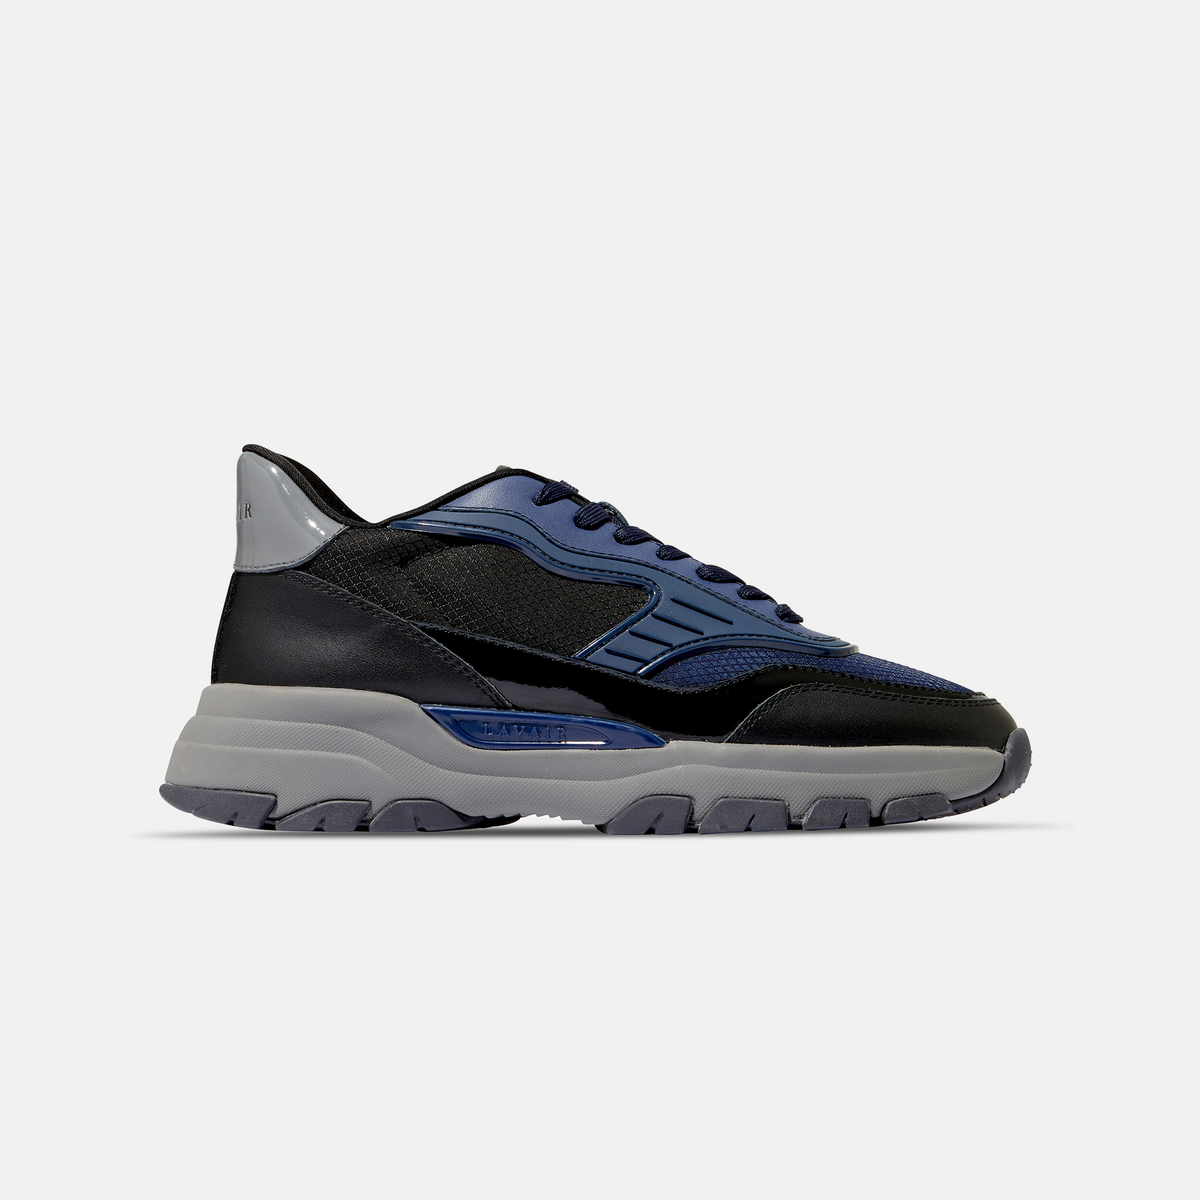 LAVAIR Pacific 2.0 Sneakers - Navy/Grey – Lavair Brand